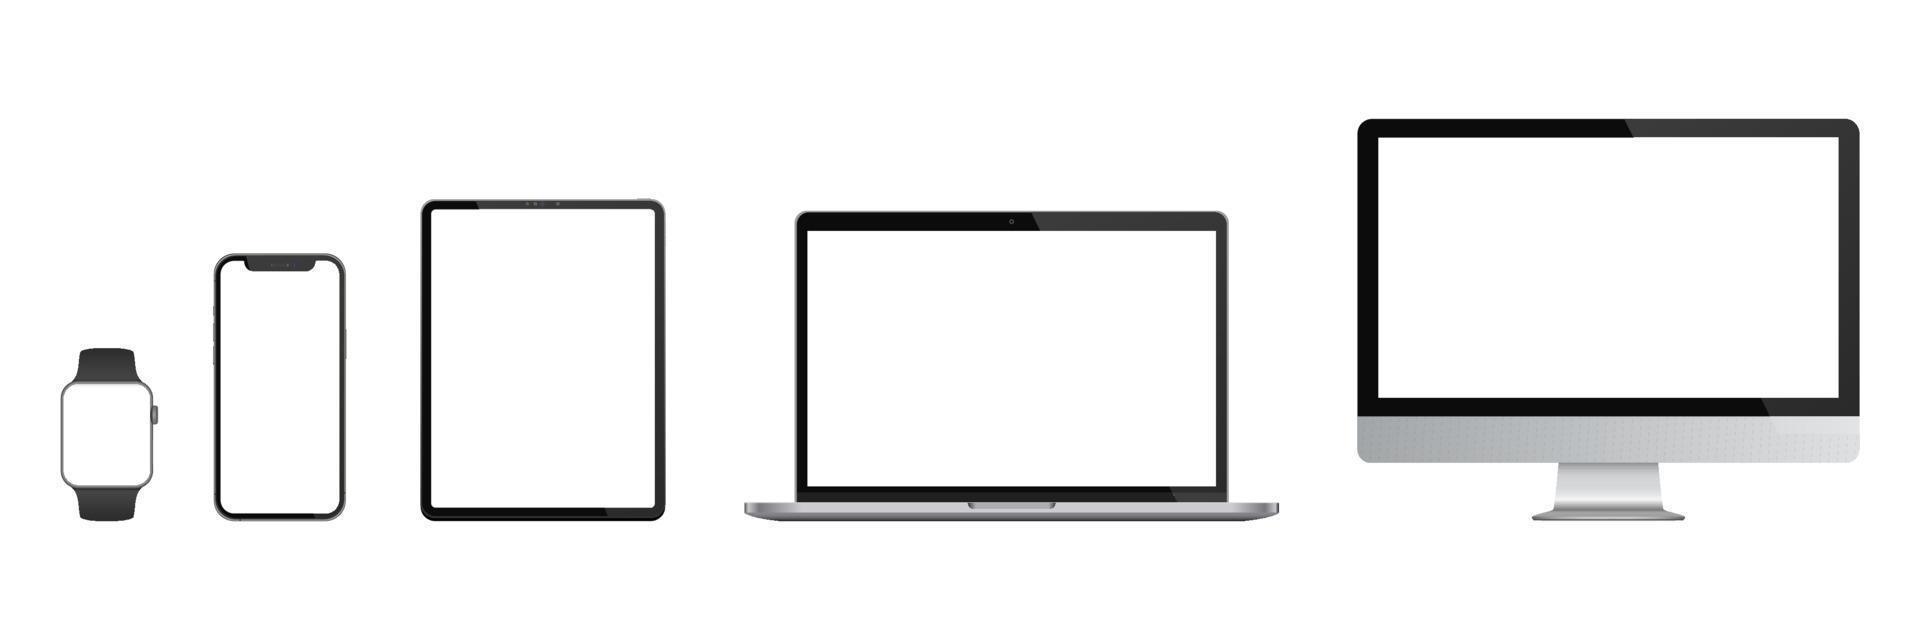 realistisk uppsättning av bildskärm, bärbar dator, surfplatta, smartphone, smartklocka. vektor illustration